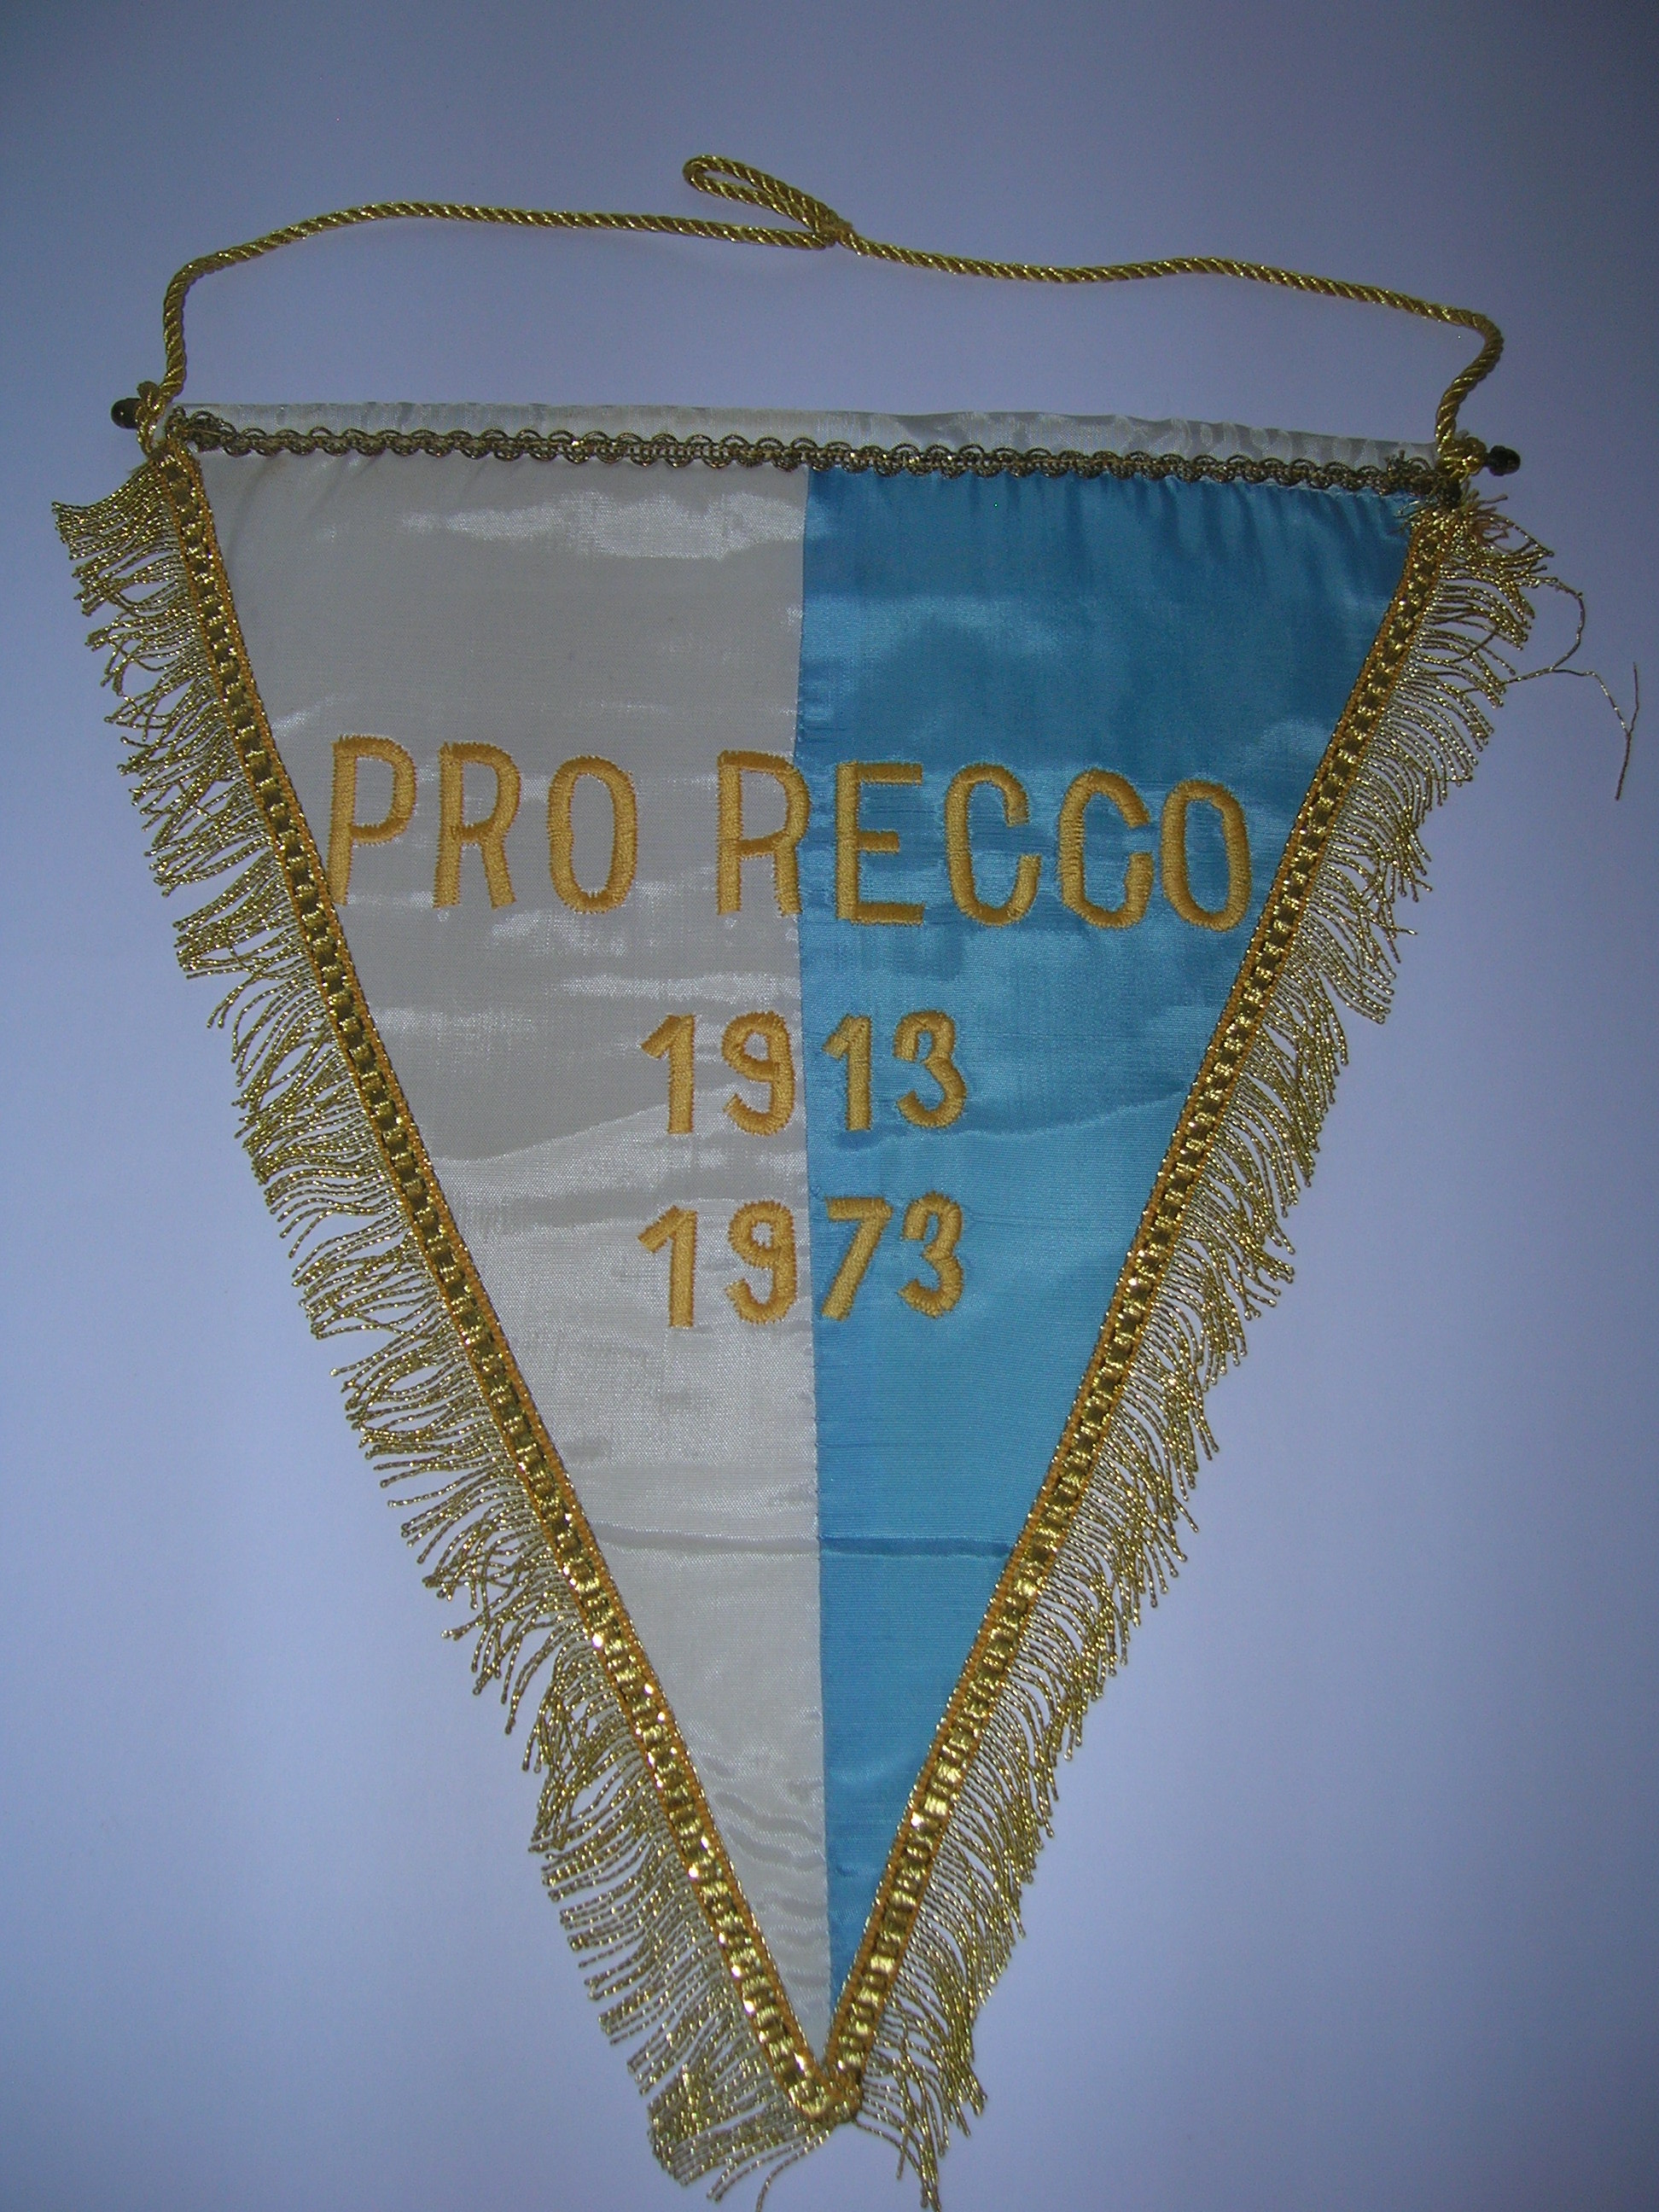 Pro Recco 1913-1973